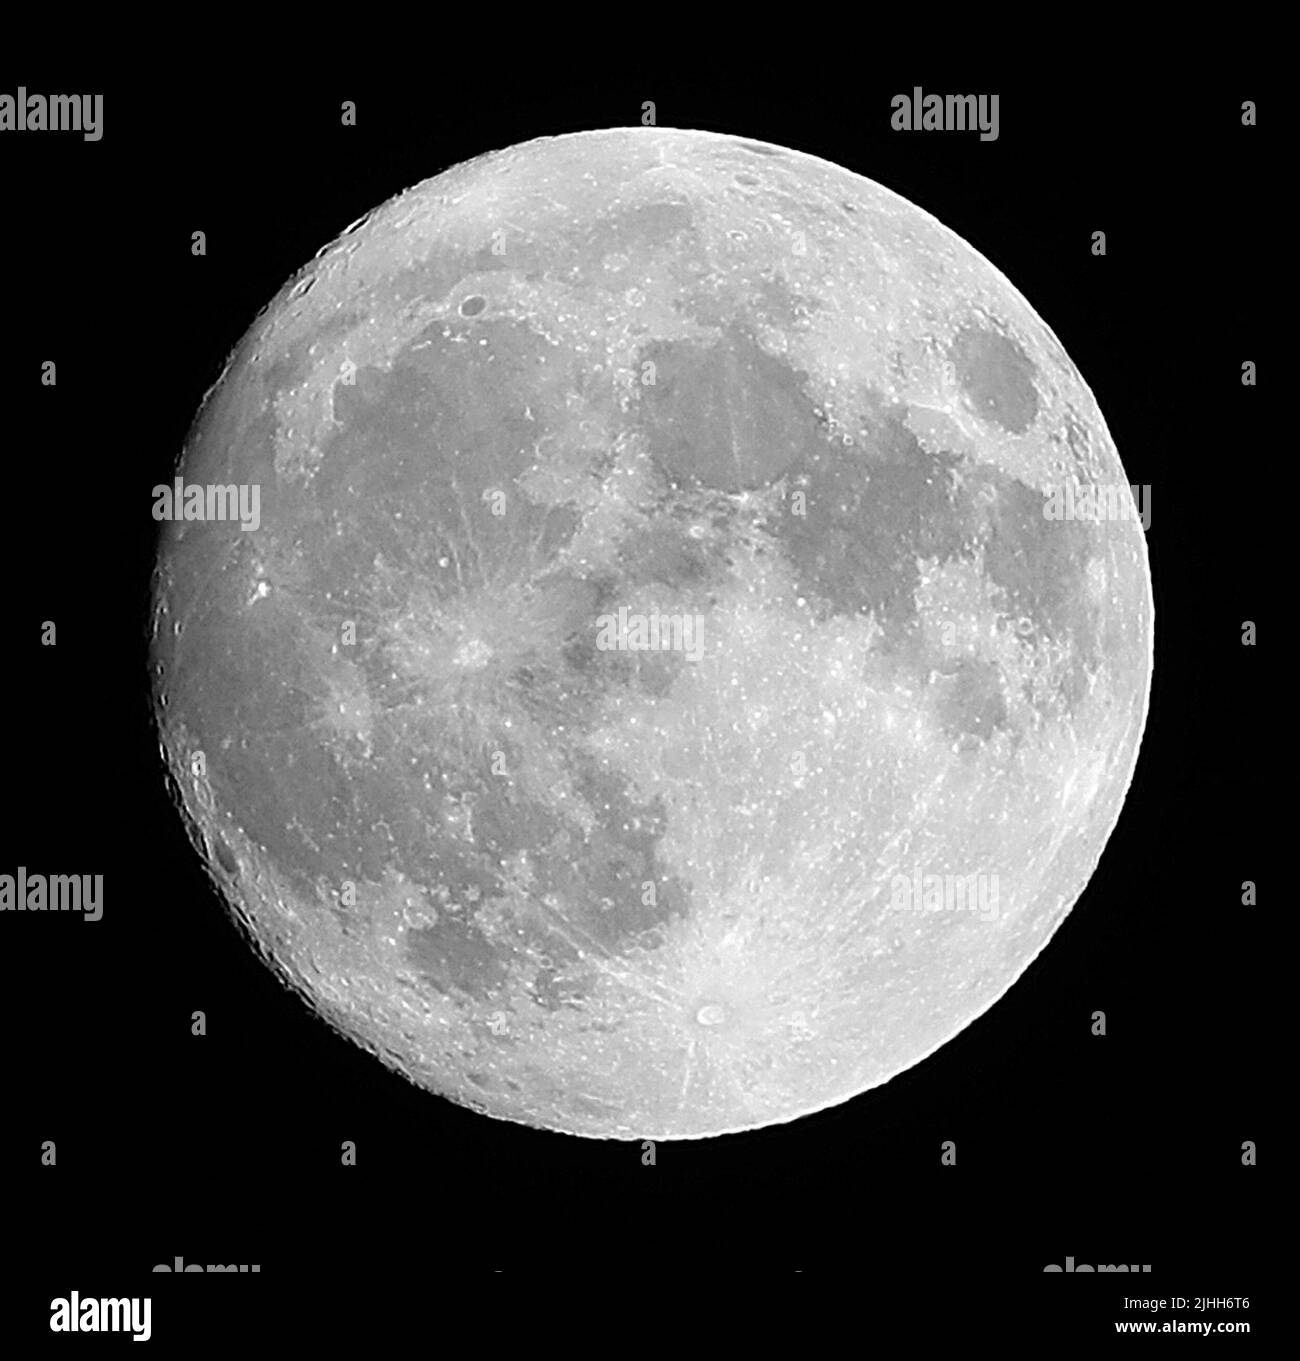 la pleine phase de lune et le ciel noir et les cratères de la surface lunaire sont vus Banque D'Images